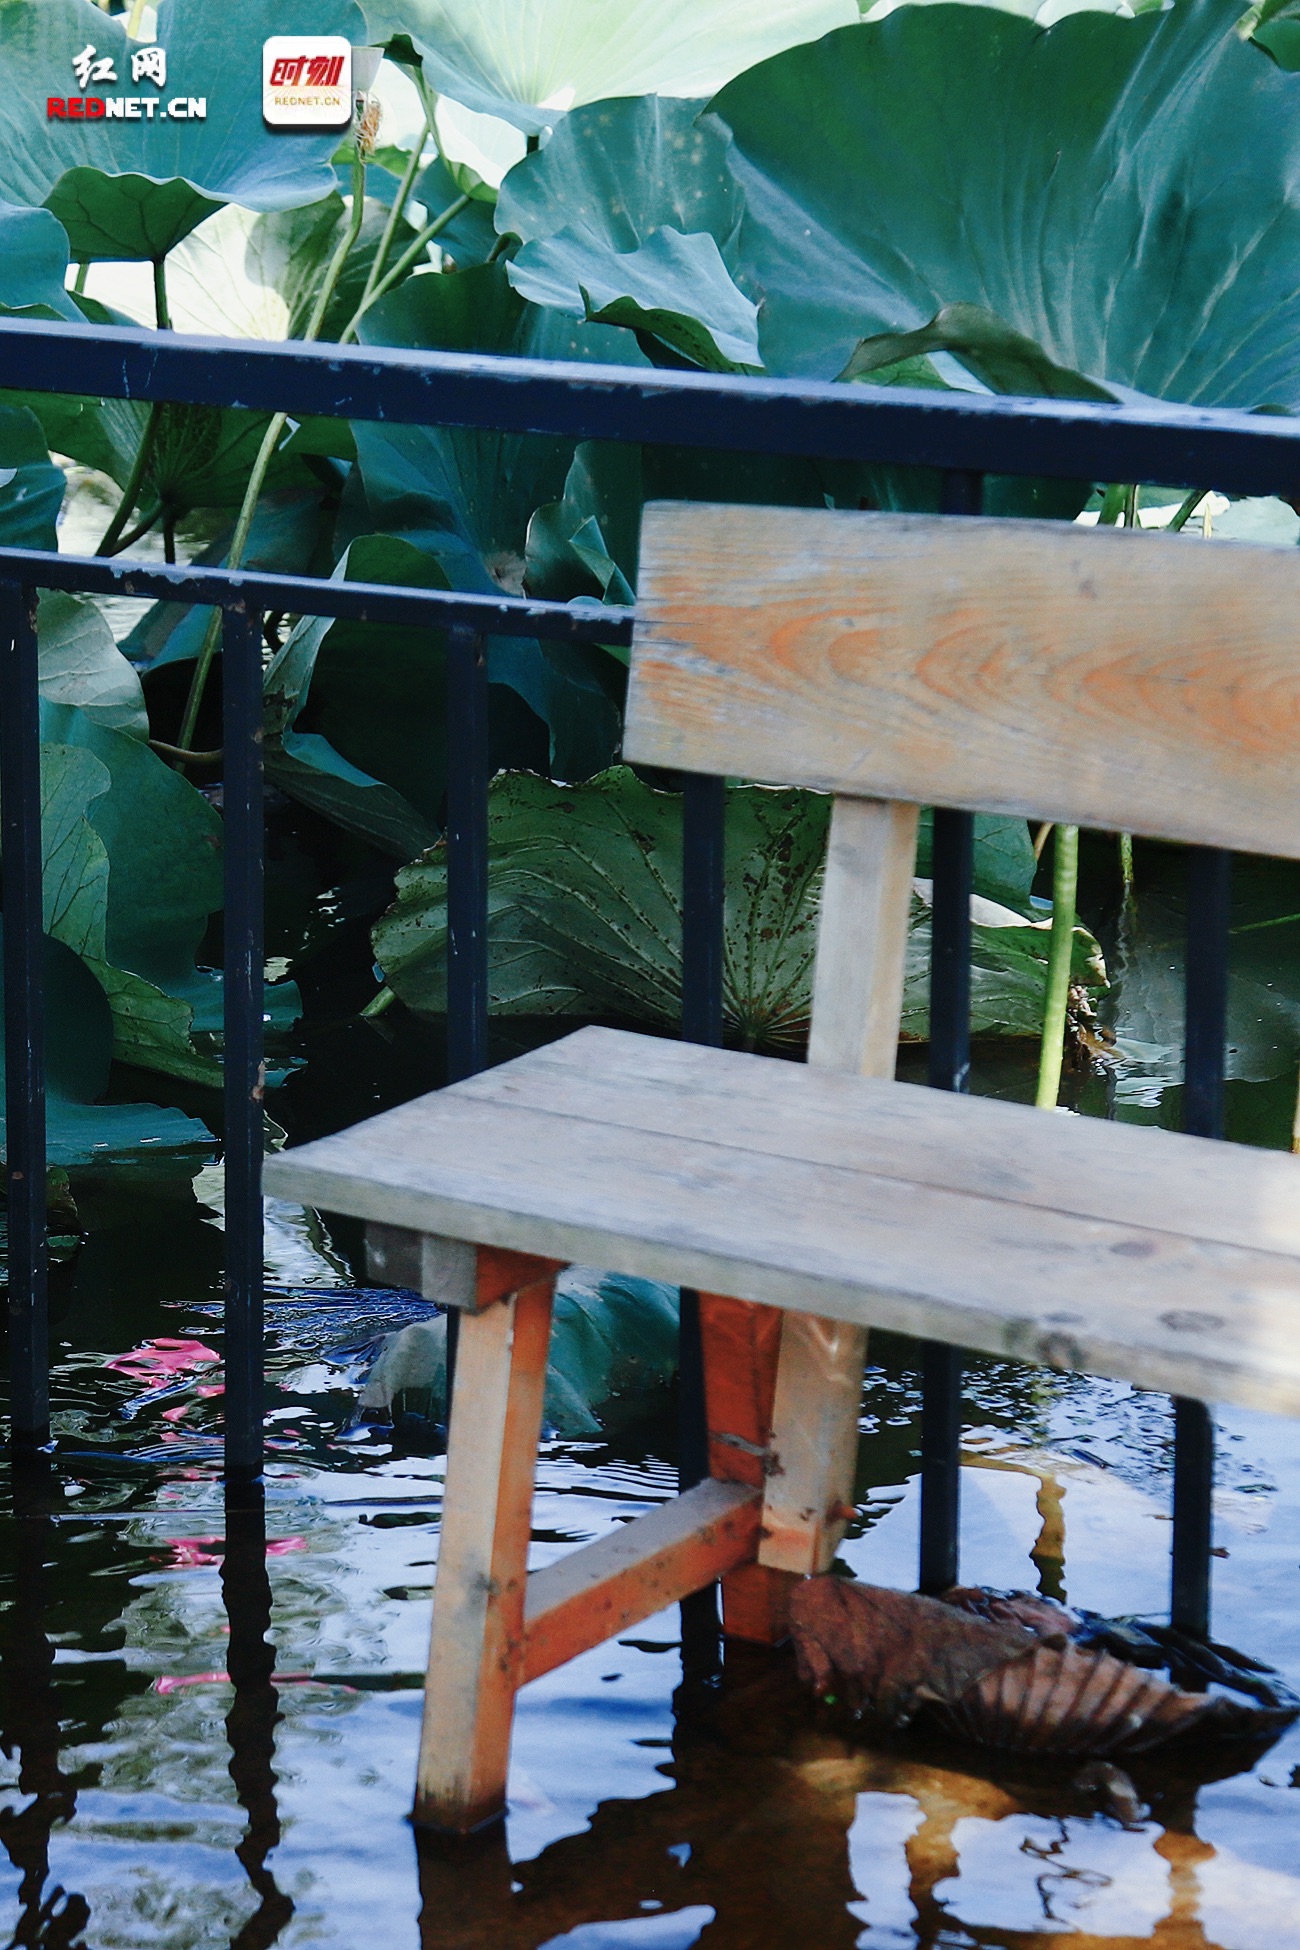 8 最简单的木凳在荷塘中都带着古朴的味道。.jpg